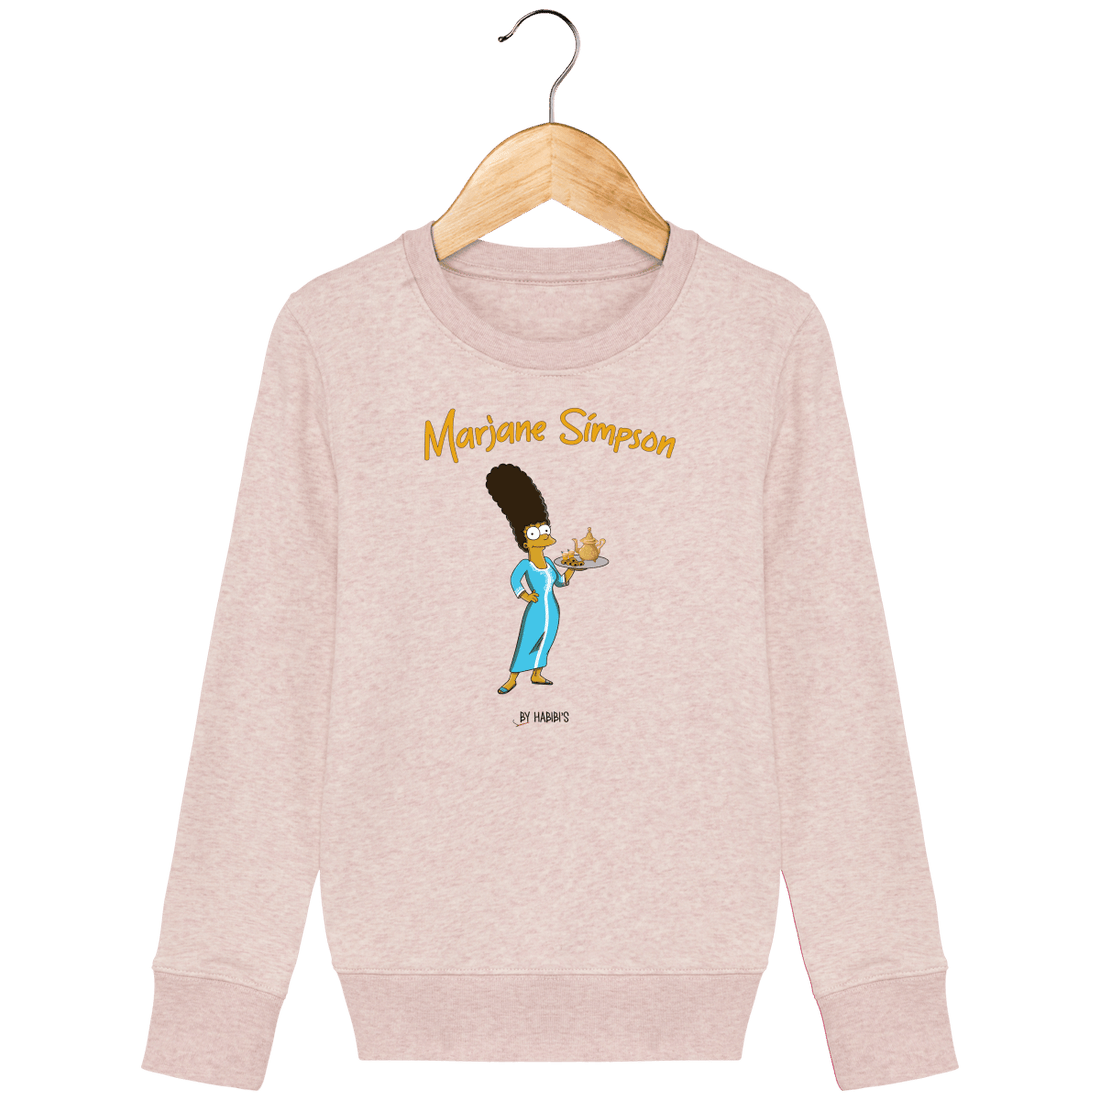 Enfant & Bébé>Sweatshirts - Sweat Enfant <br> Marjane Simpson